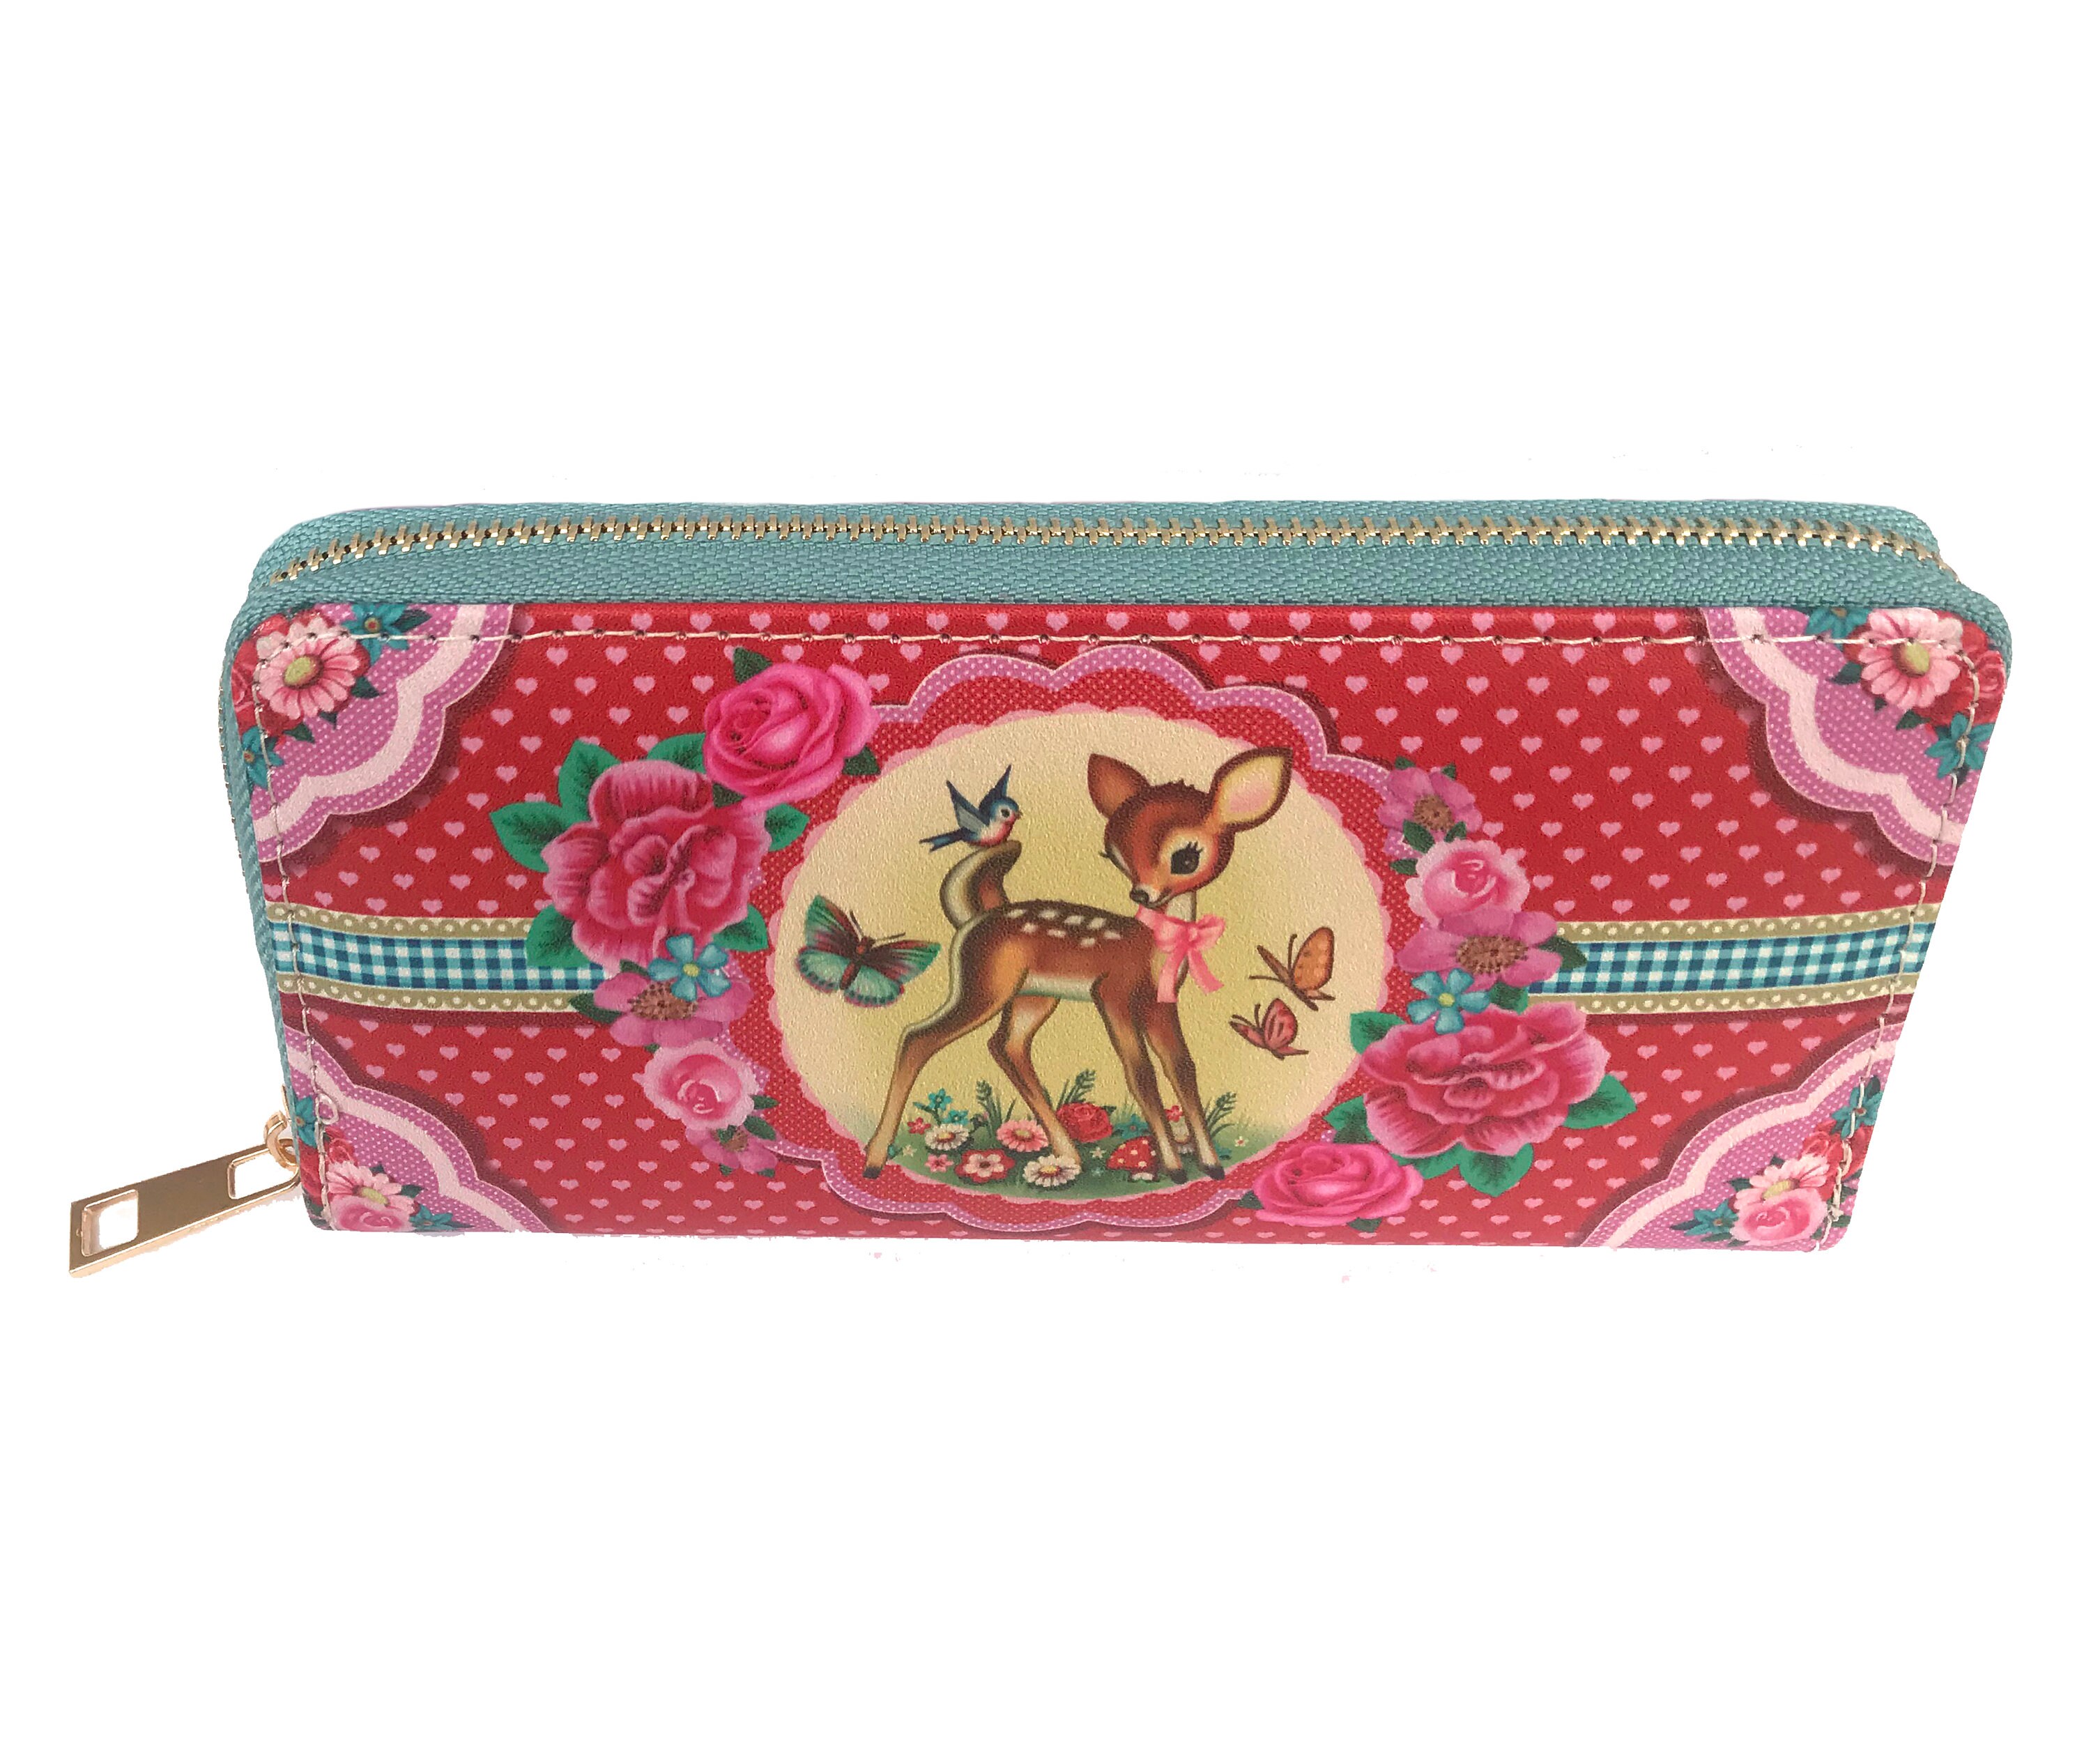 Cute Bambi wallet vintage style purse darling deer wallet | Etsy